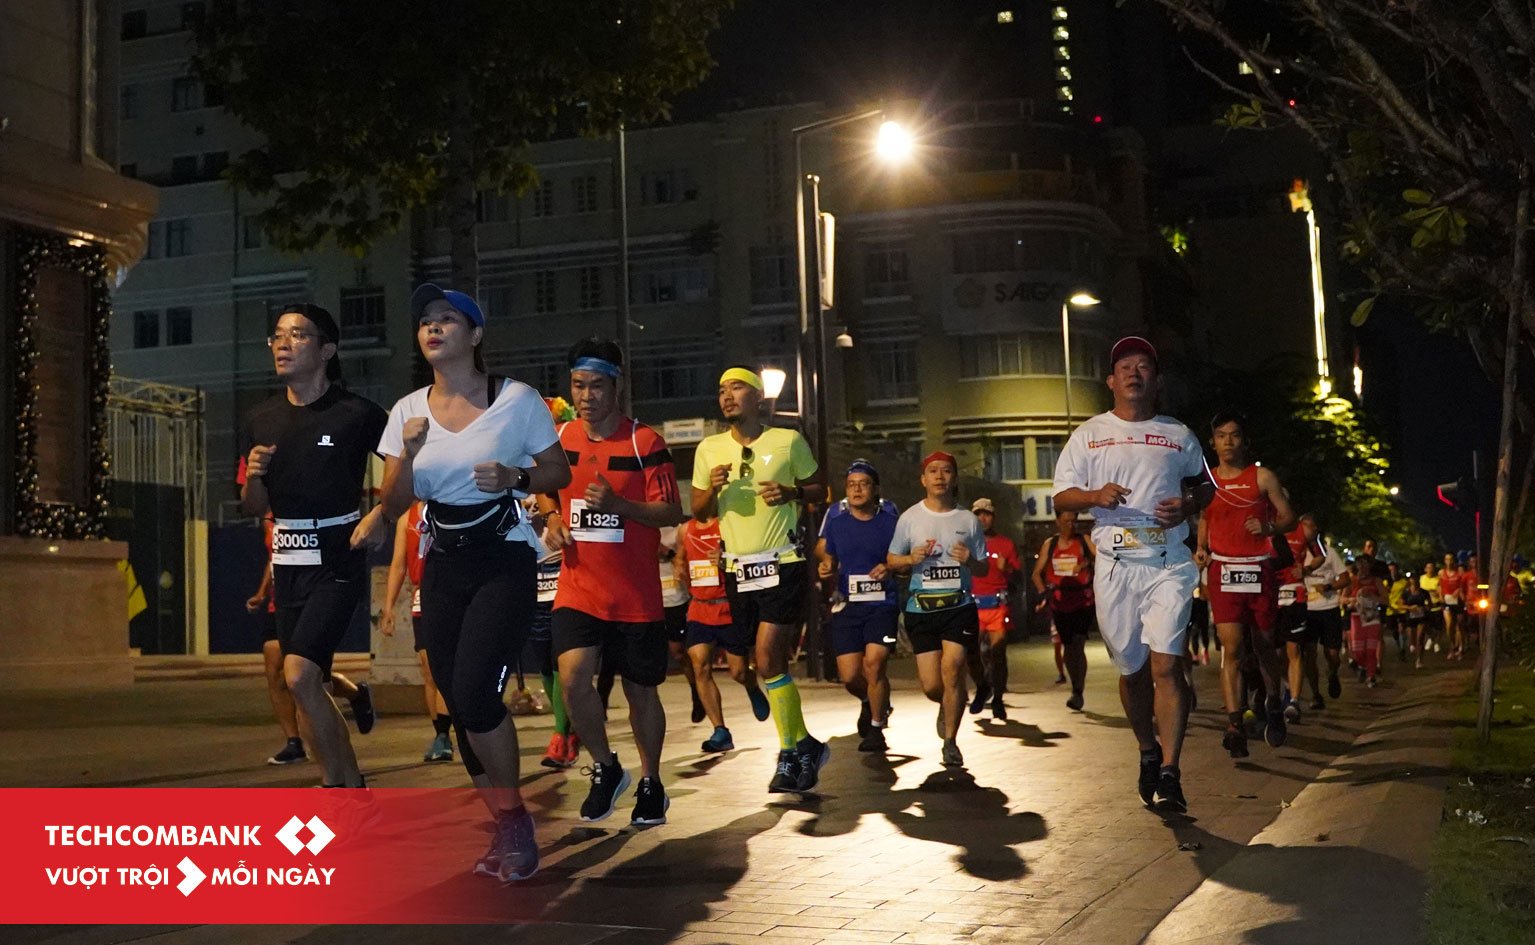 Kí sự HCMC International Marathon 2019 - Lần 2 chinh phục Full Marathon trên đường nhựa - ki su hcmc marathon 2019 2